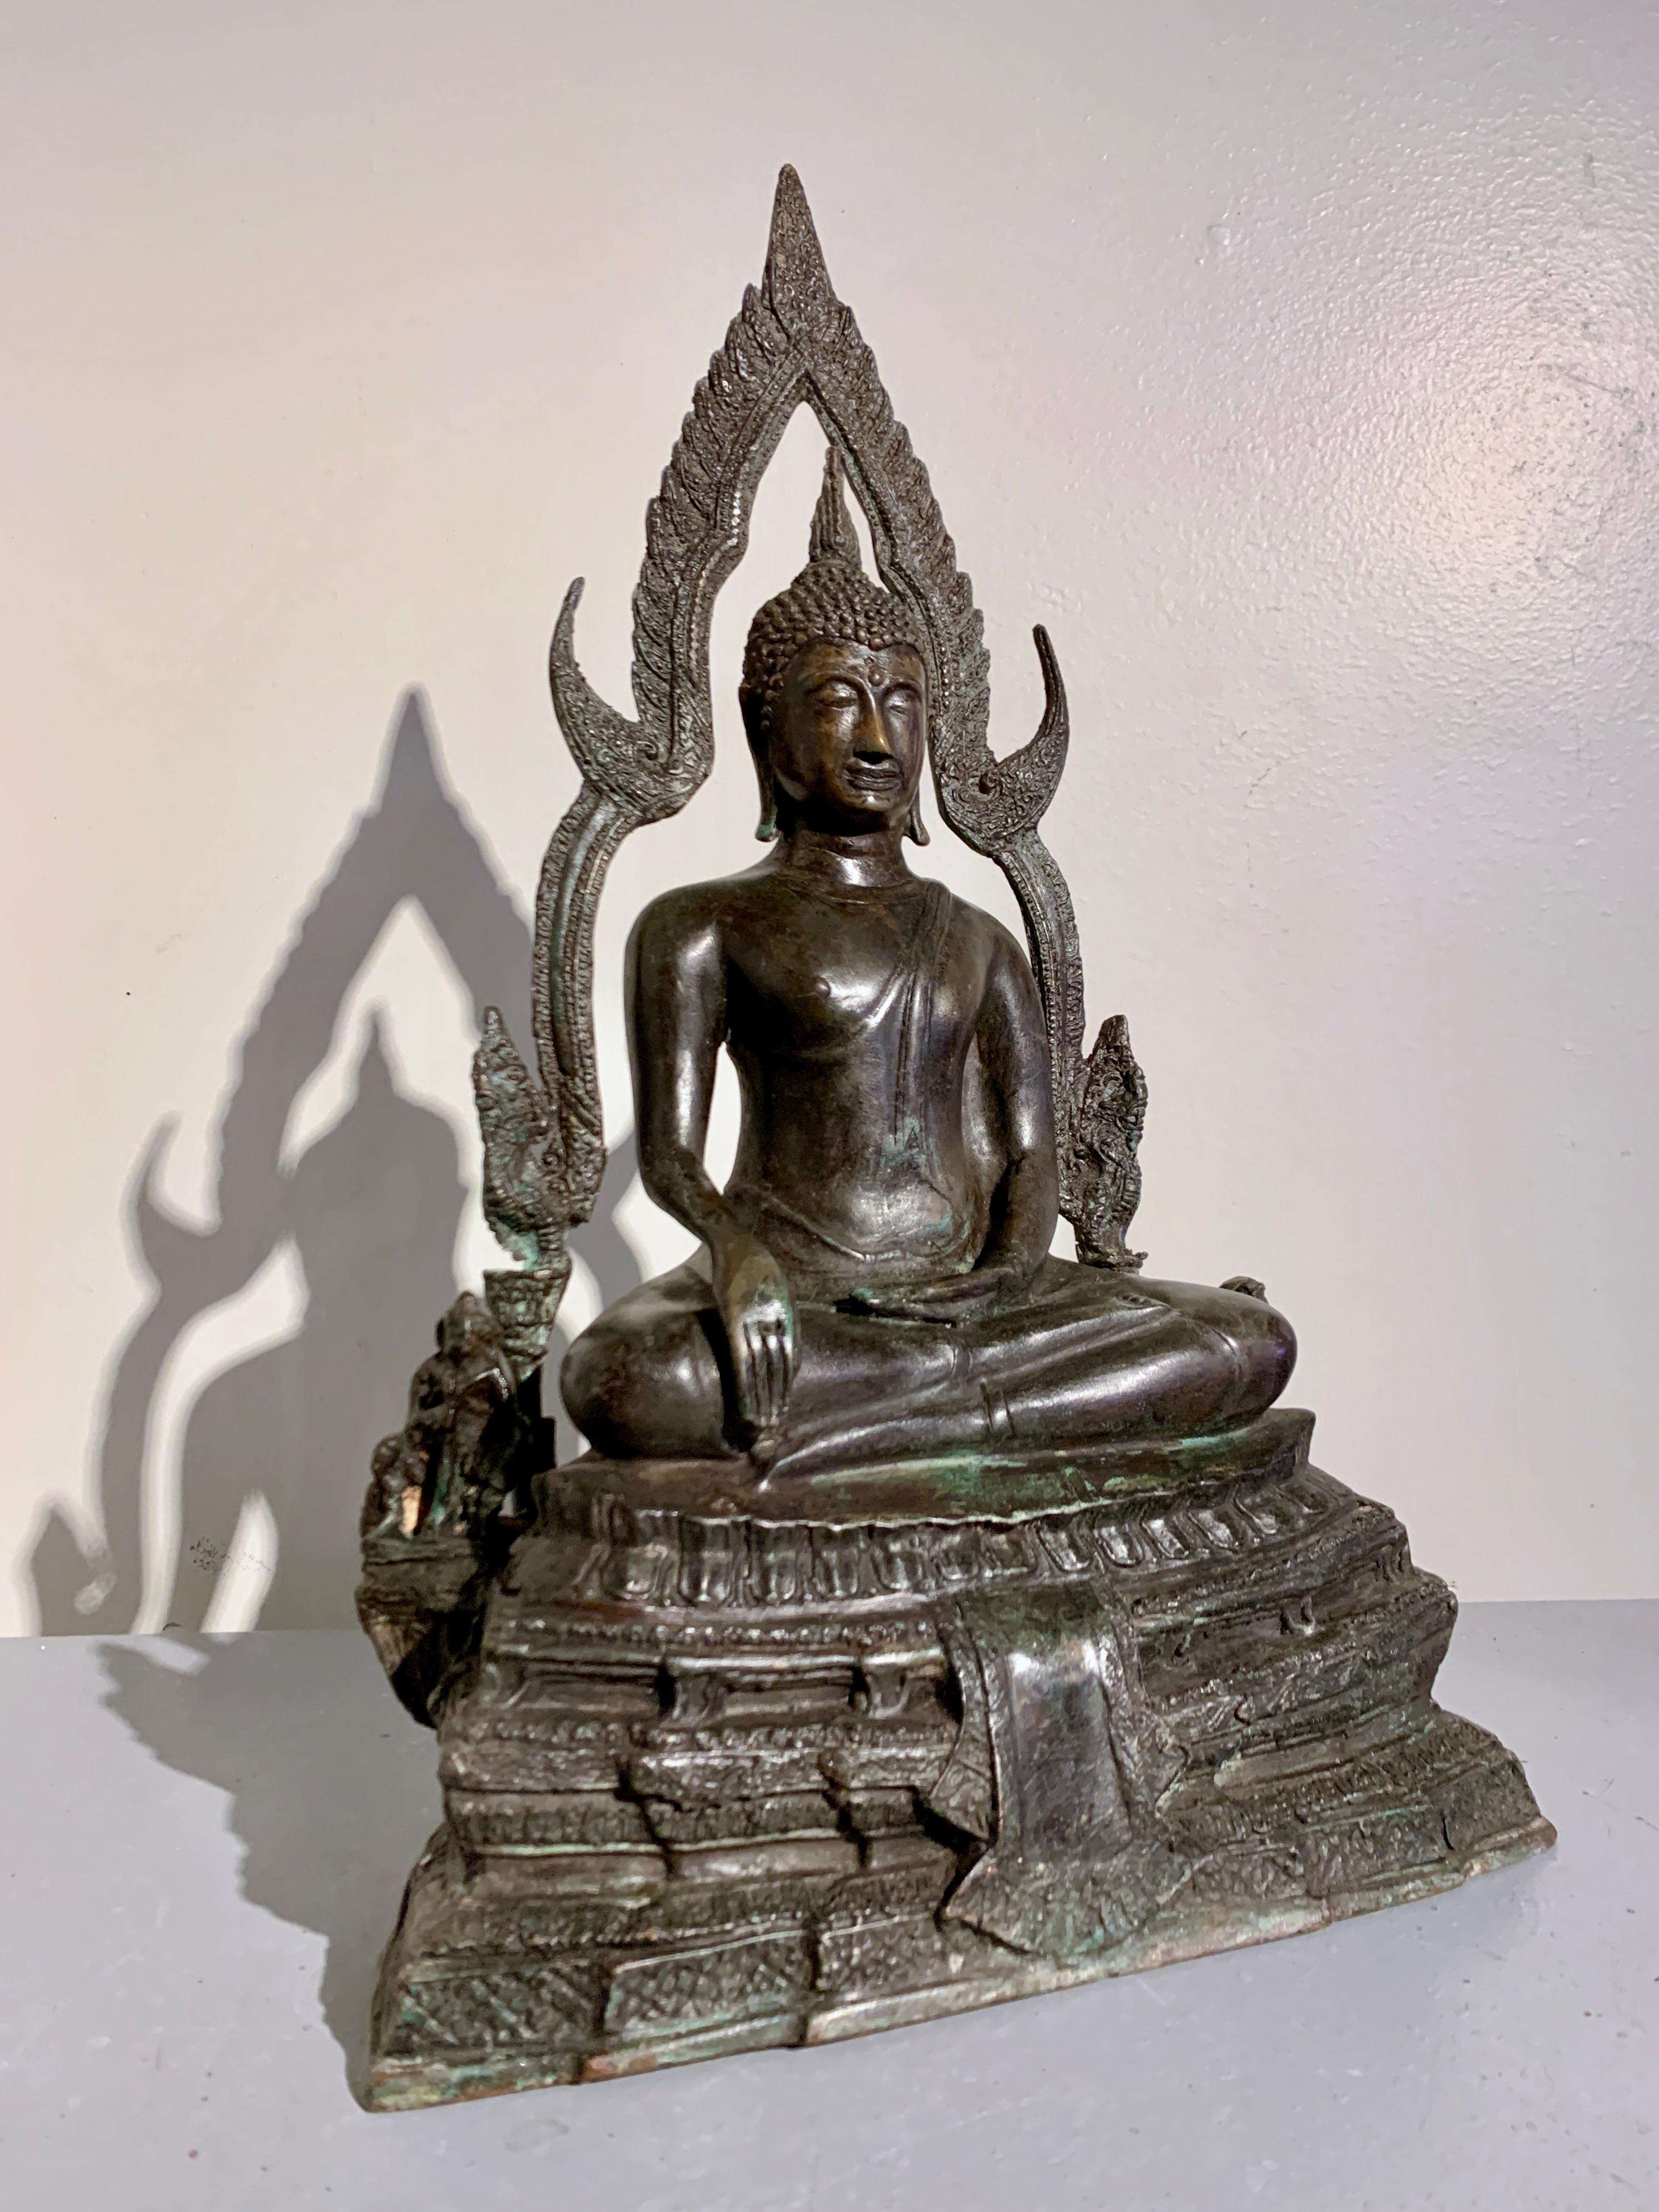 Reproduction en bronze à échelle réduite du célèbre Bouddha doré connu sous le nom de Para Puttha Chinnarat, conservé au Wat Phra Si Rattana Mahathat, milieu du 20e siècle, Thaïlande.

Reproduction fidèle du célèbre Bouddha assis thaïlandais connu